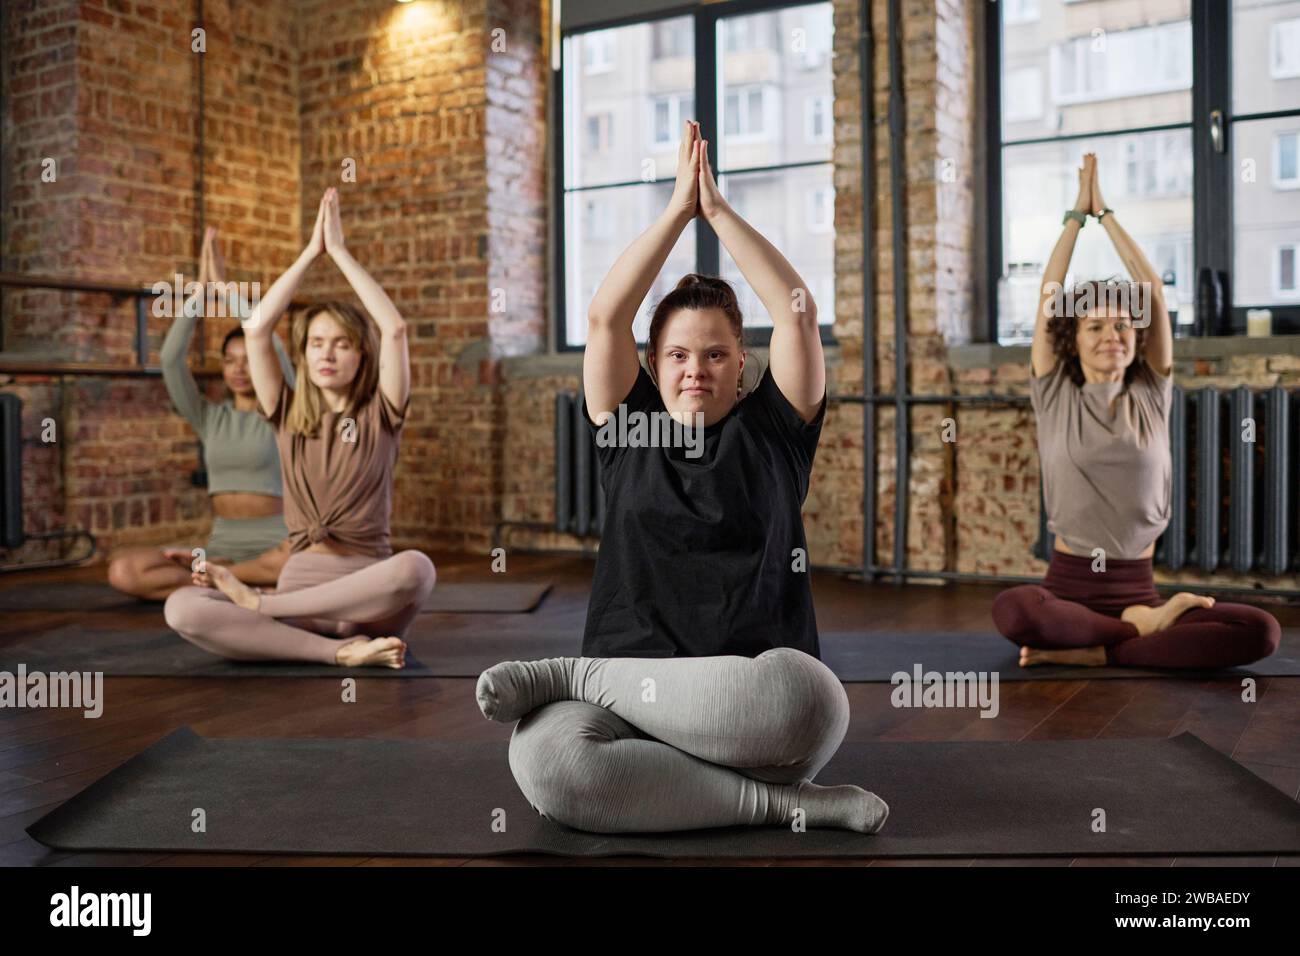 Junge aktive Frau mit Behinderung, die Beine gekreuzt und die Hände über dem Kopf zusammengelegt hält und während des Yoga-Trainings in die Kamera blickt Stockfoto